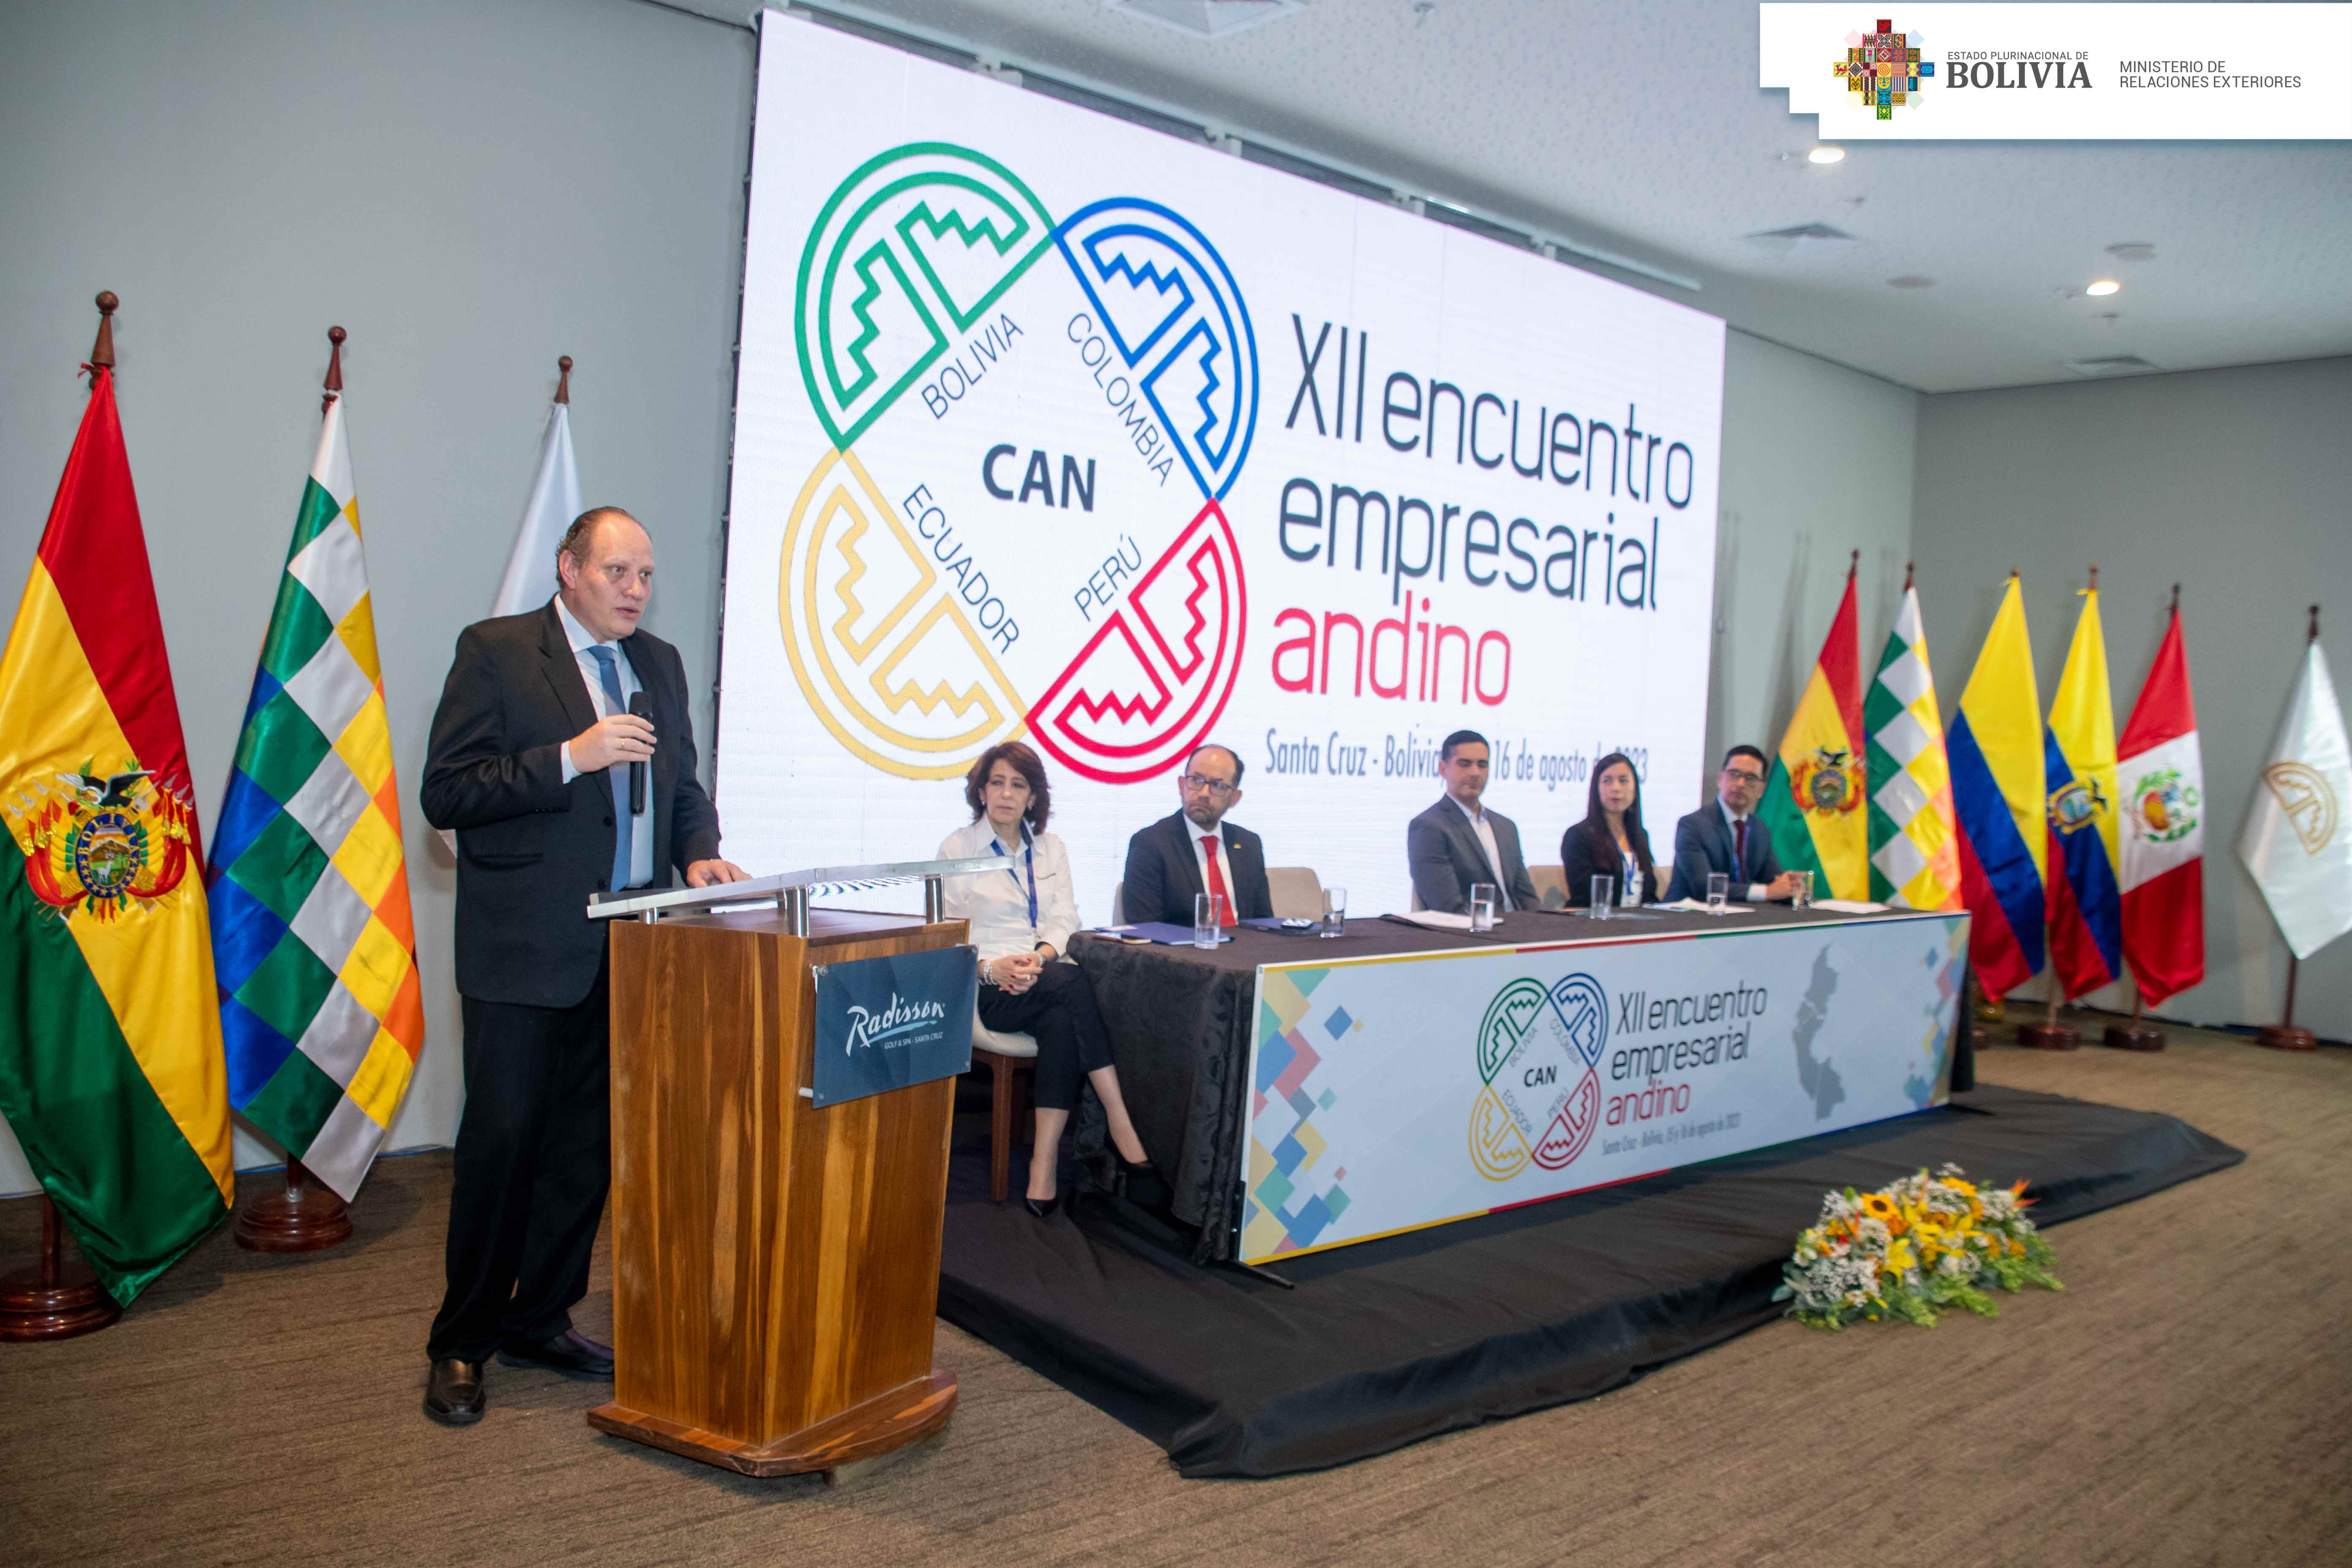 Se inició el XII Encuentro Empresarial Andino en la ciudad de Santa Cruz de la Sierra en Bolivia 